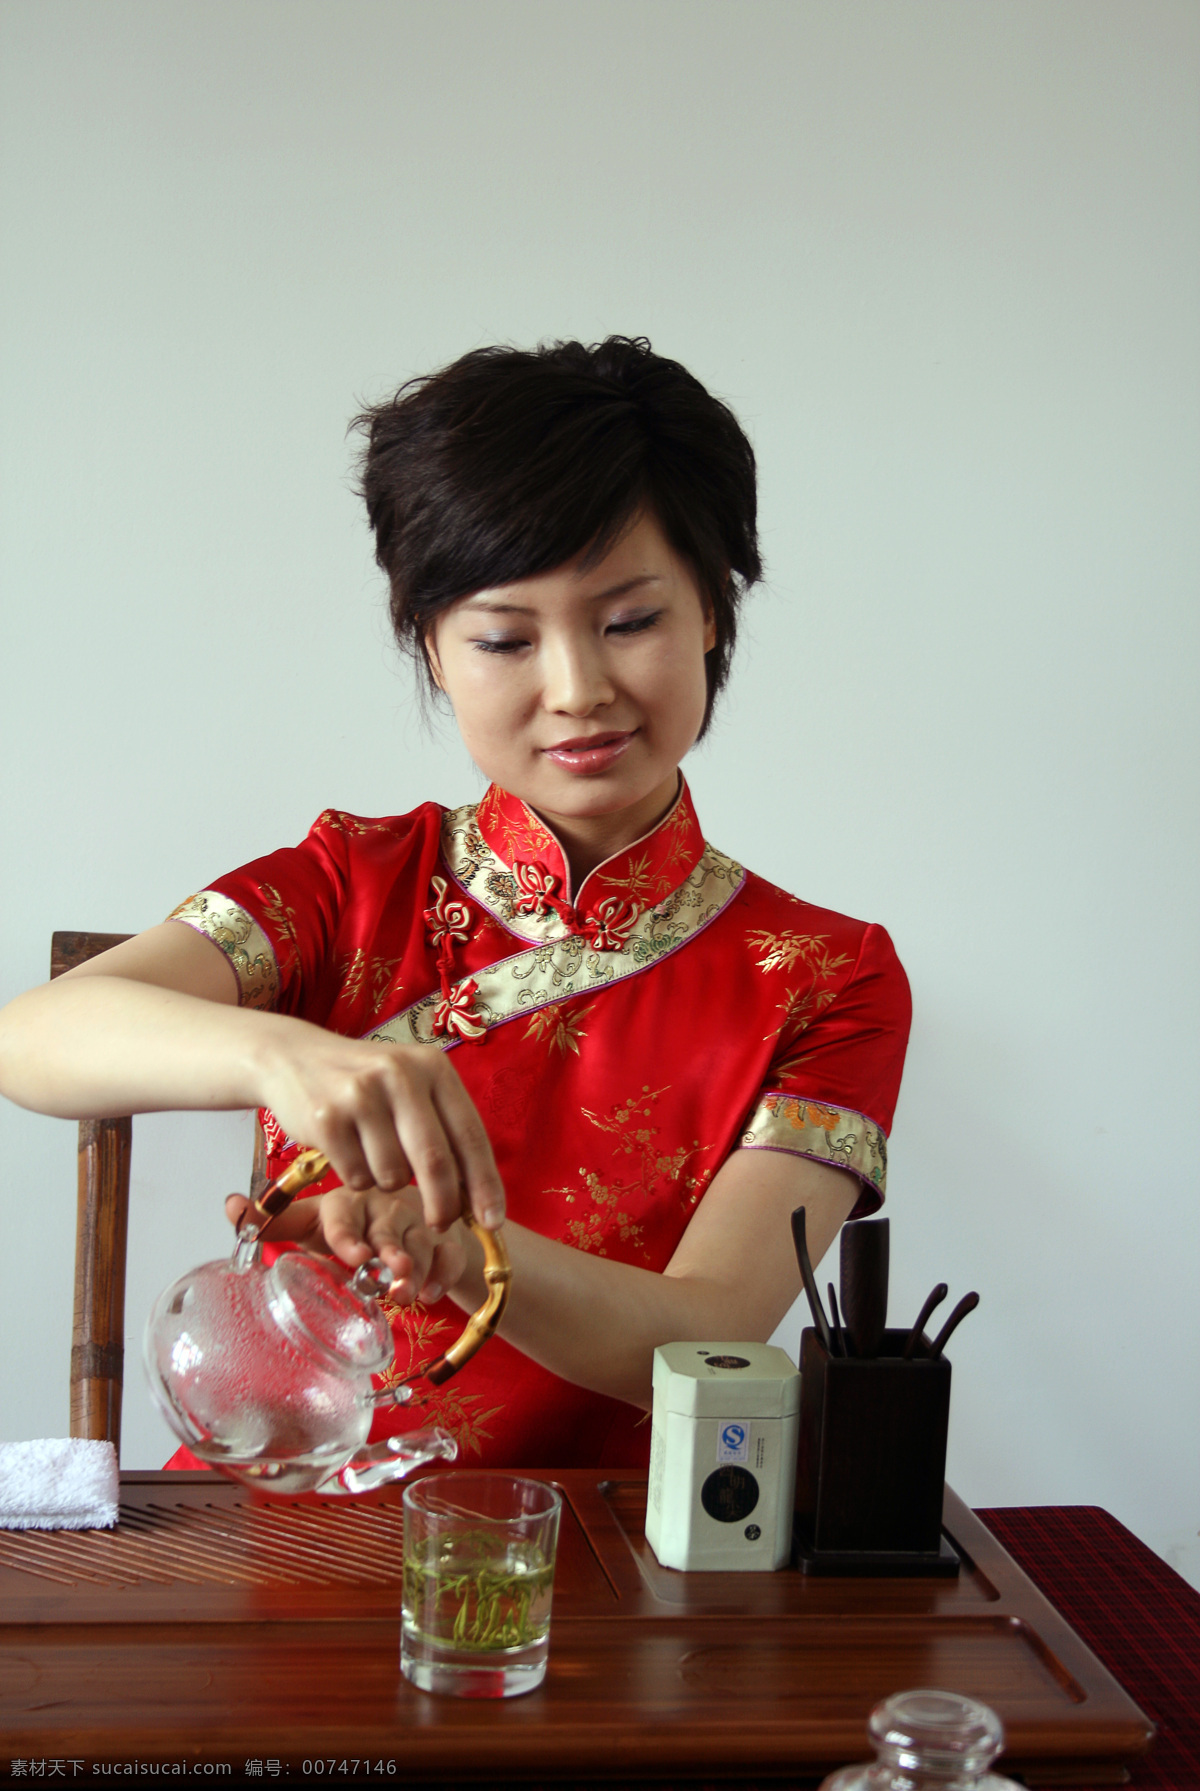 茶艺 茶壶 茶文化 美女沏茶 传统文化 文化艺术